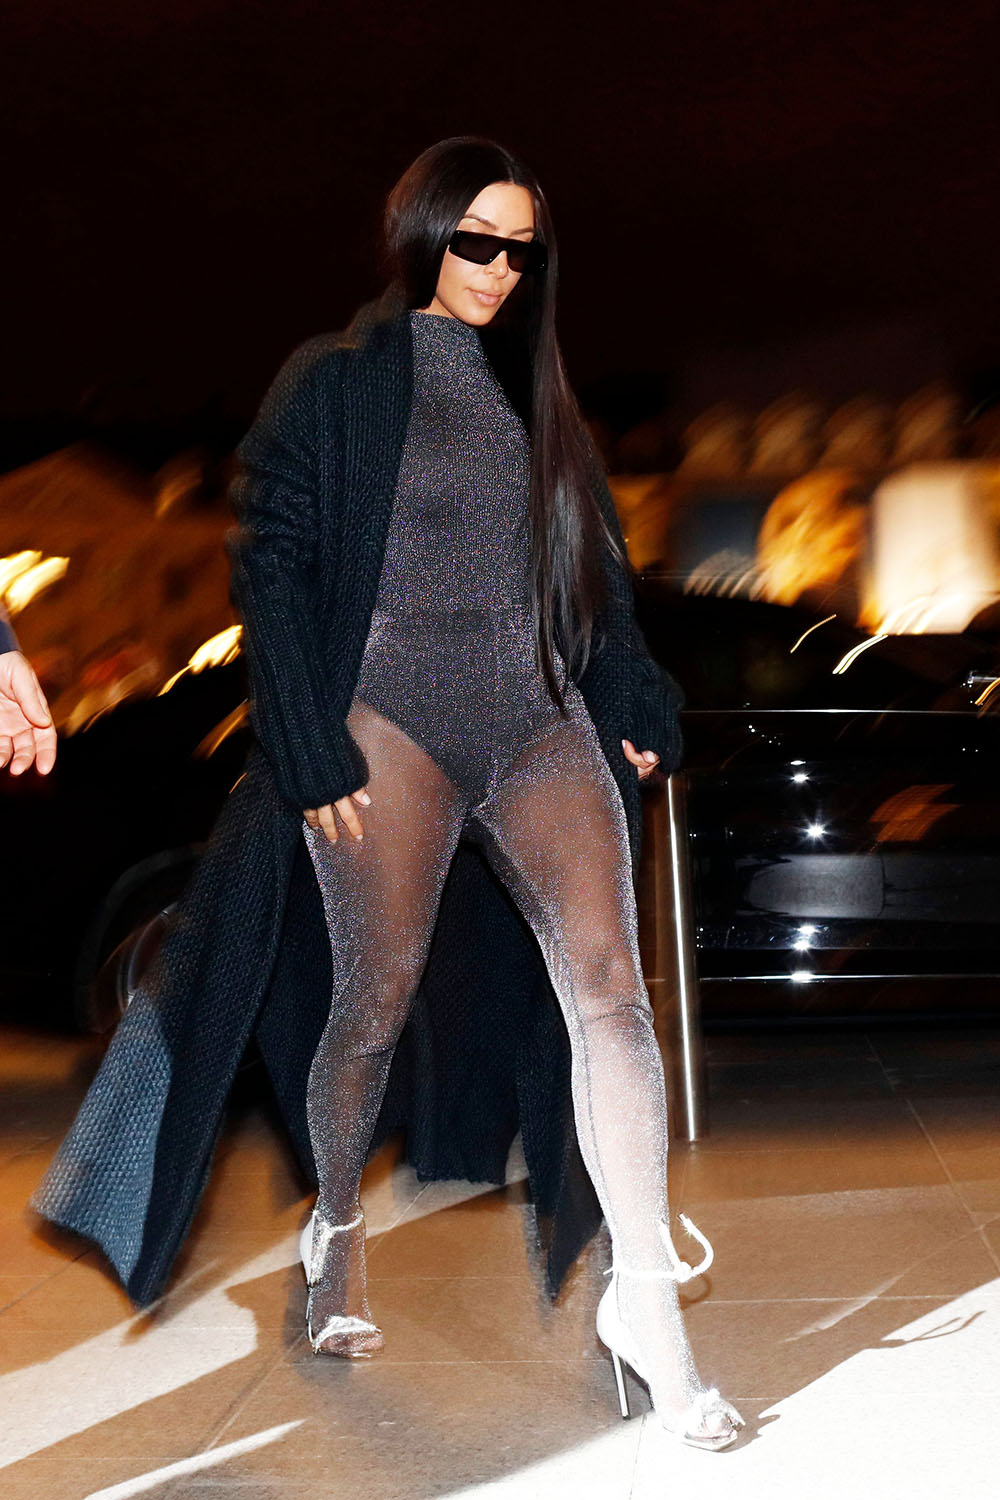 Kim Kardashian Wears Plunging Bodysuit to Lunch with Kourtney Kardashian